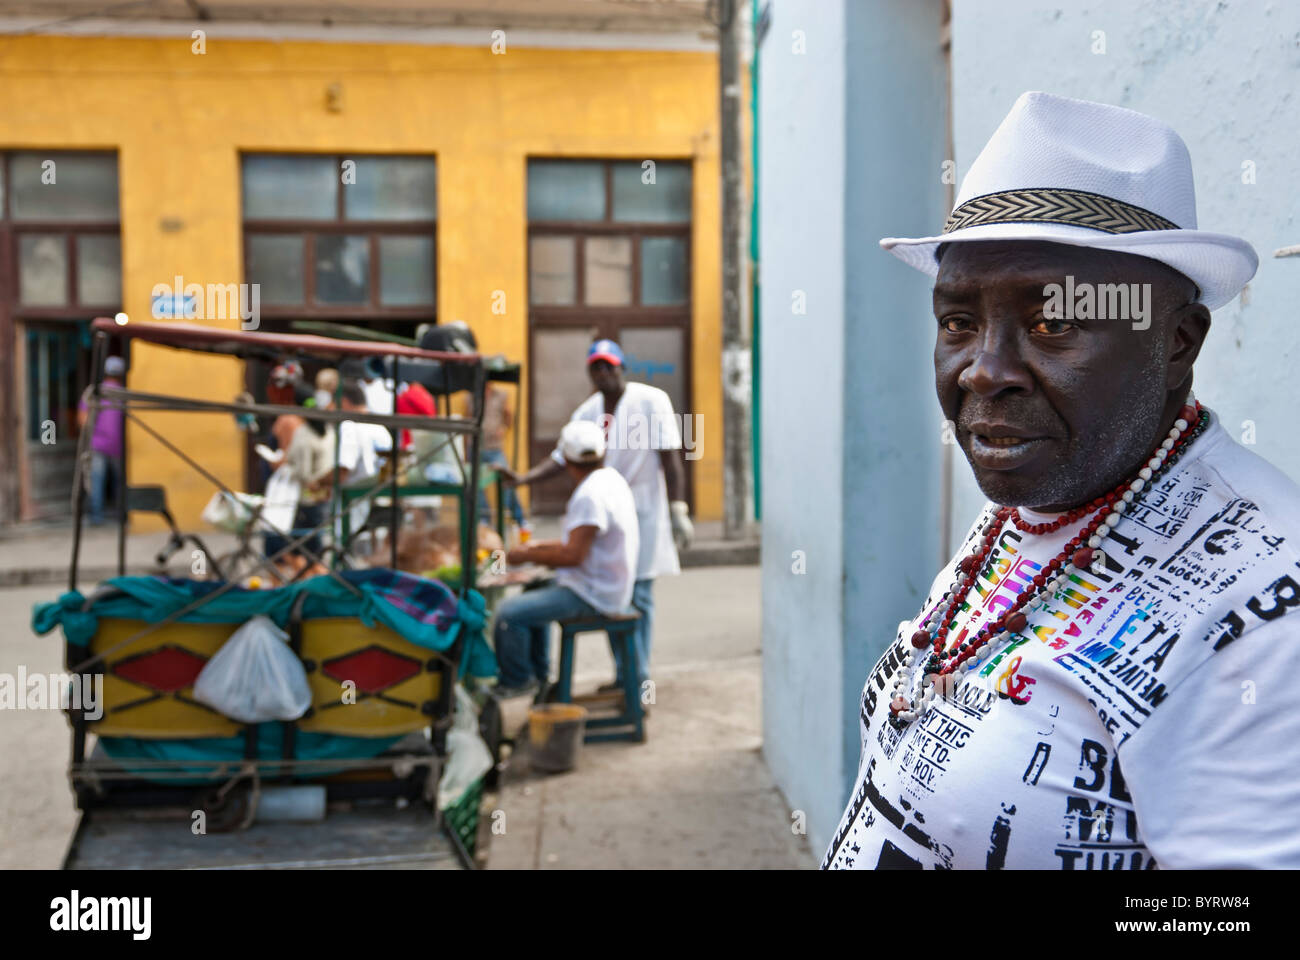 Schwarzer Mann, die Zugehörigkeit zu einer religiösen Sekte in weiß gekleidet. Camagüey, Kuba, Caribbean Stockfoto